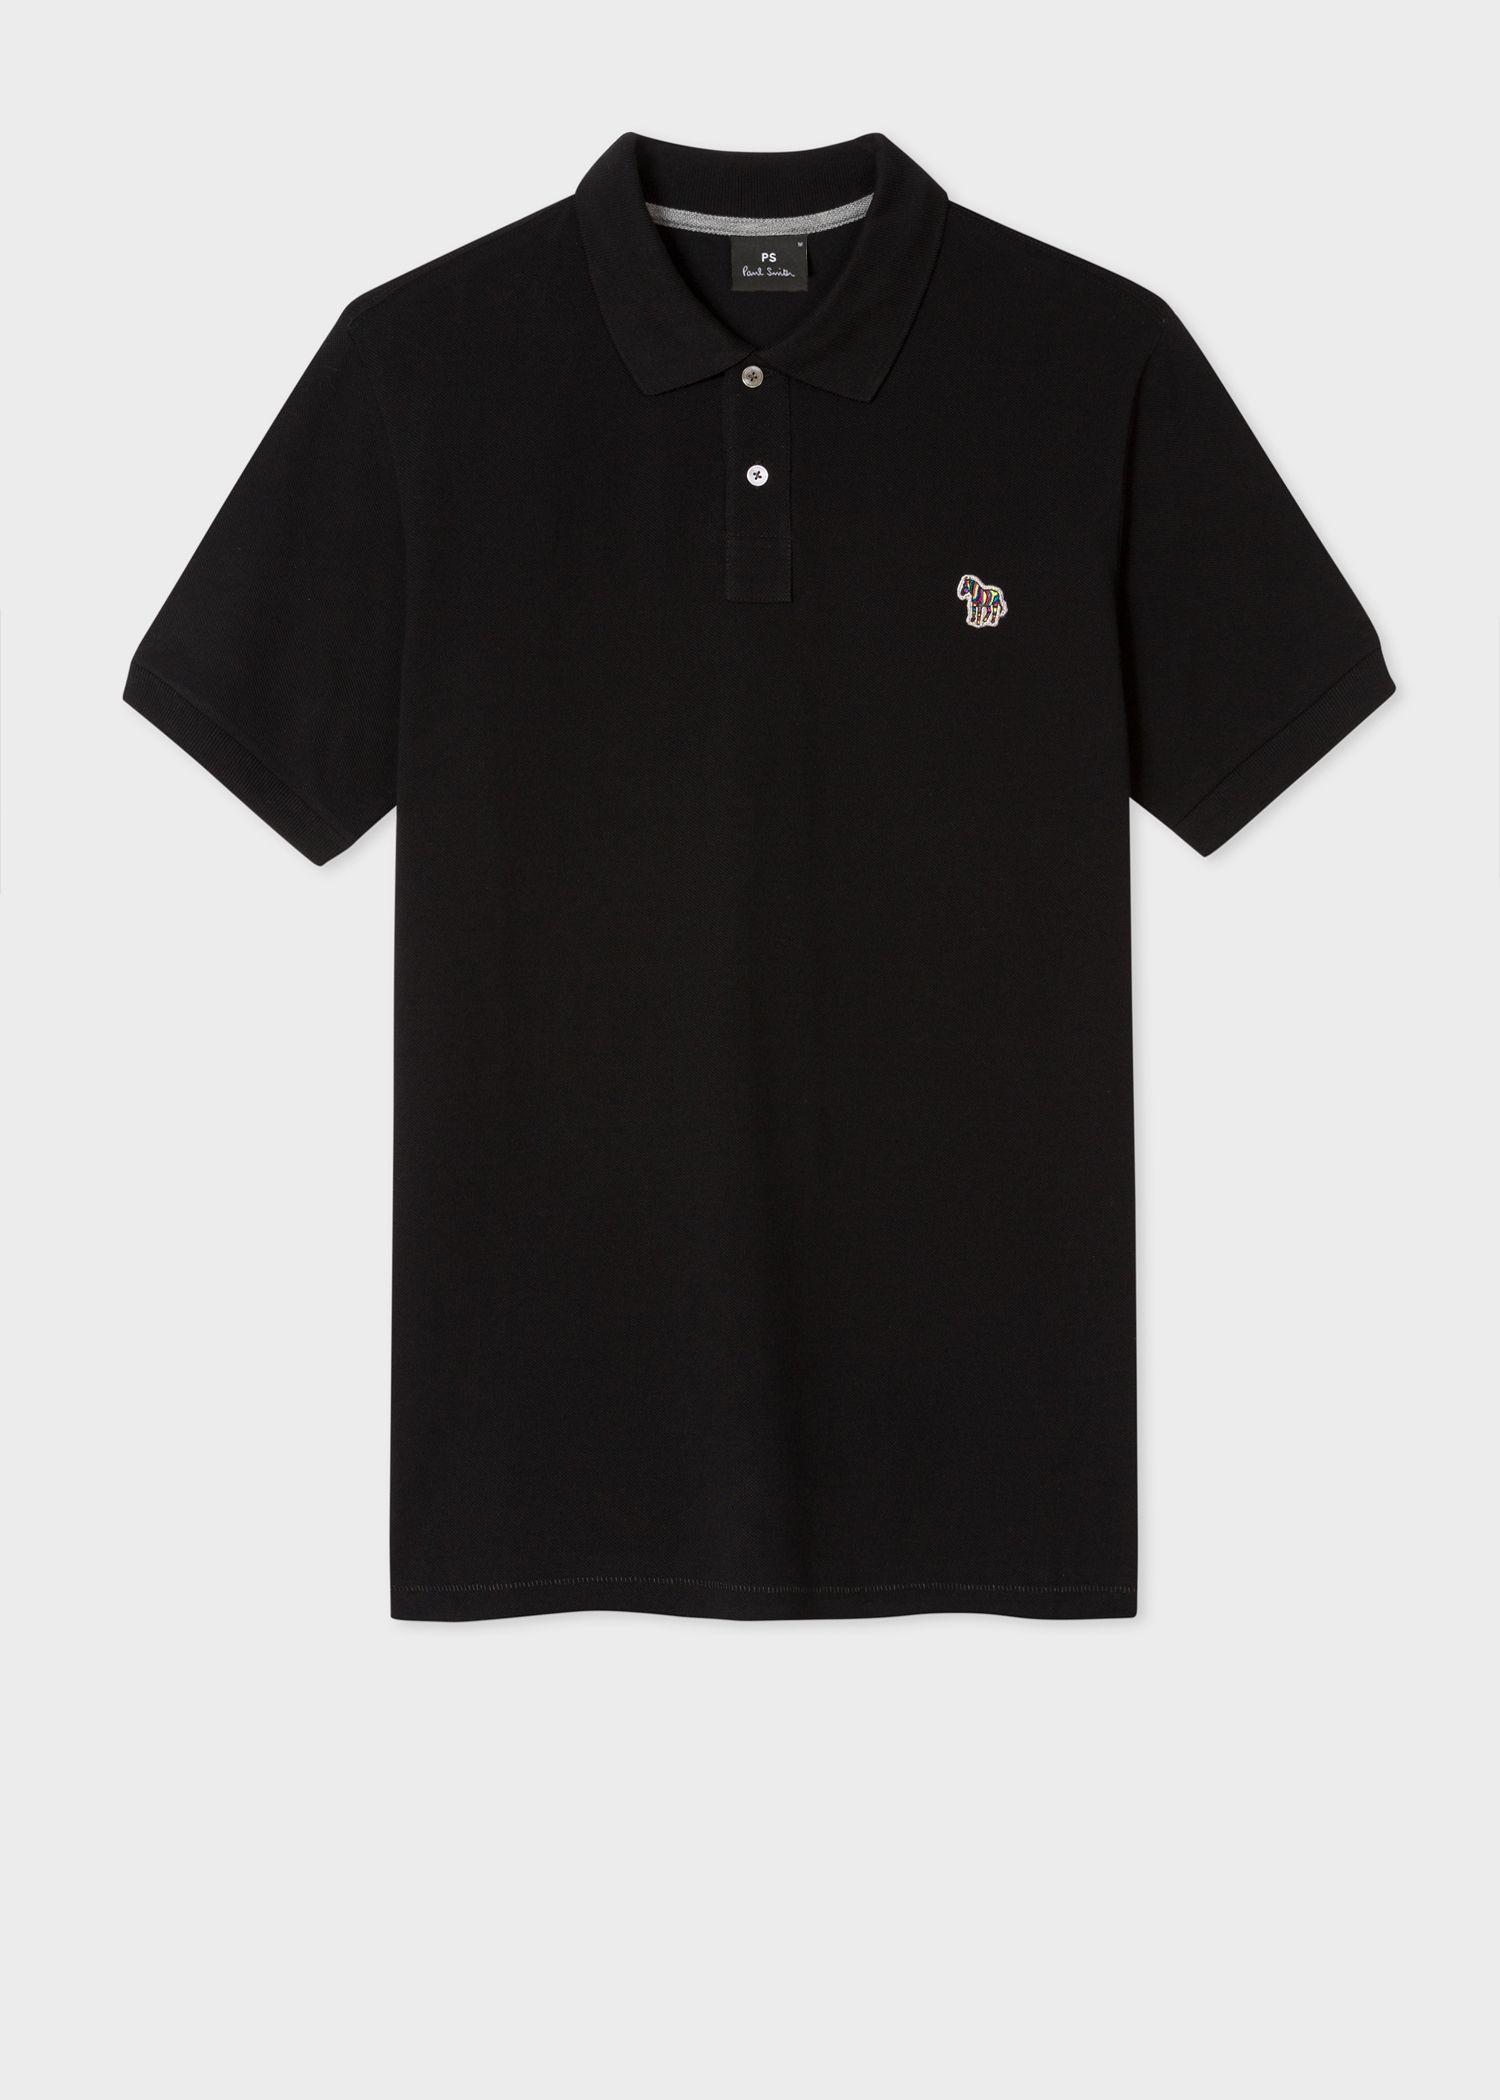 Black Polo Logo - Men's Black Cotton-Piqué Zebra Logo Polo Shirt - Paul Smith